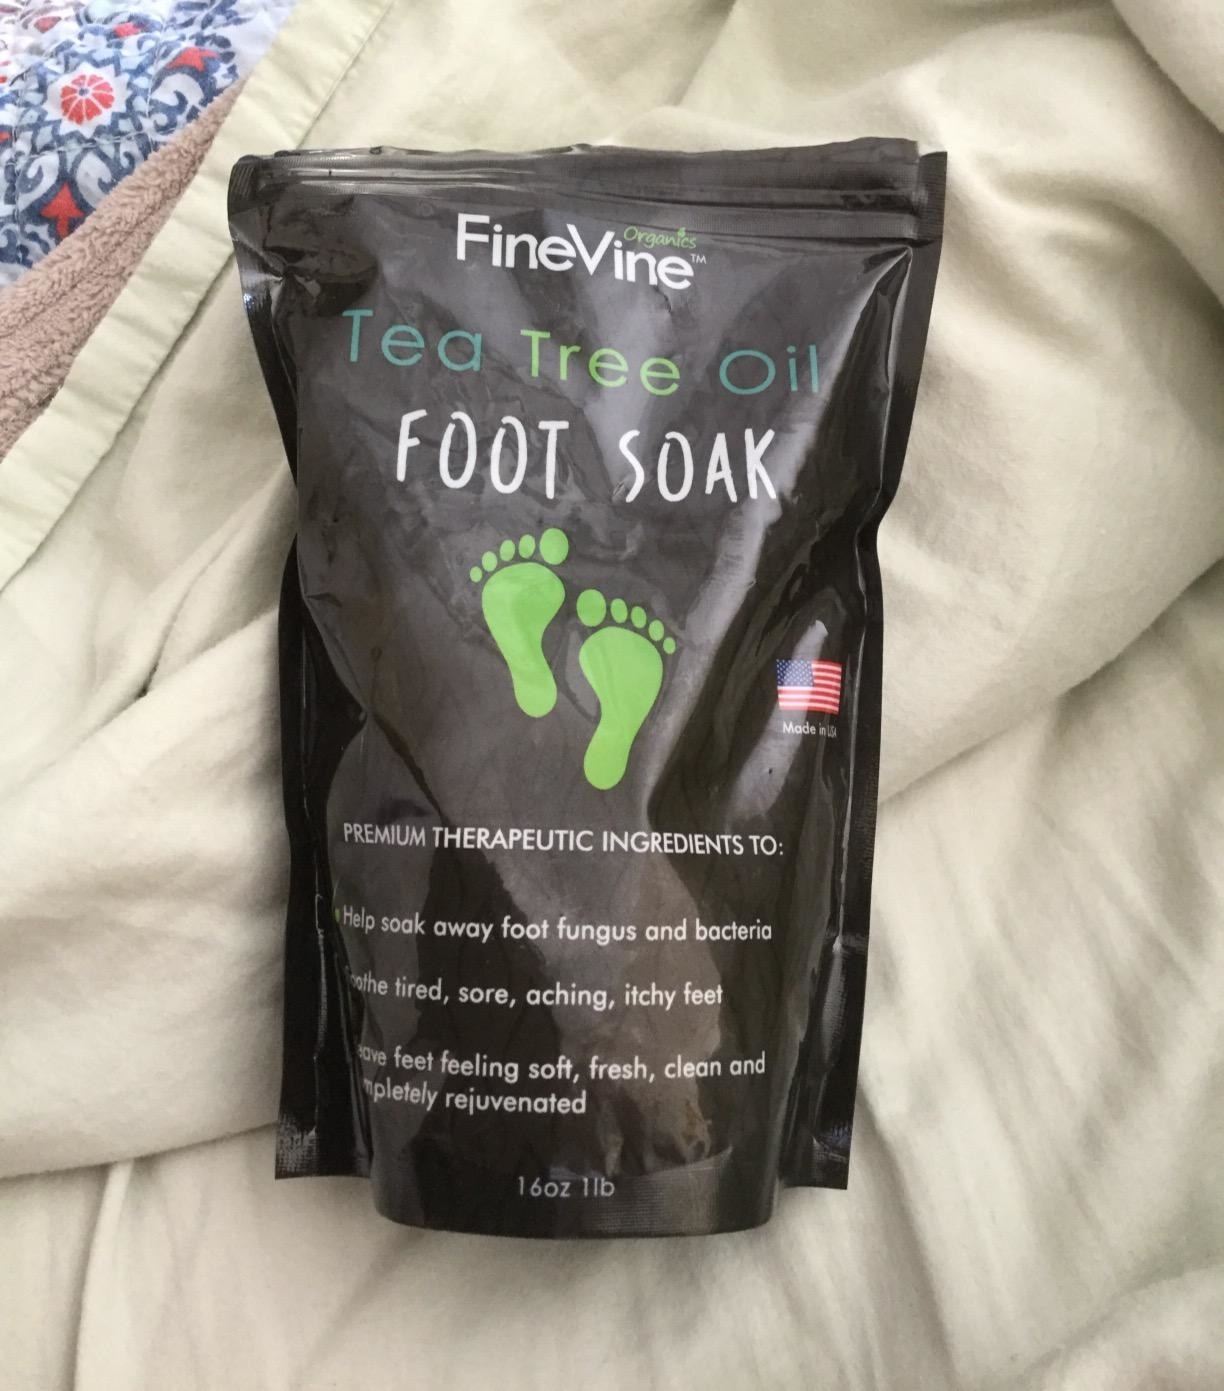 A foot soak package that says &quot;Tea Tree Oil Foot Soak&quot;